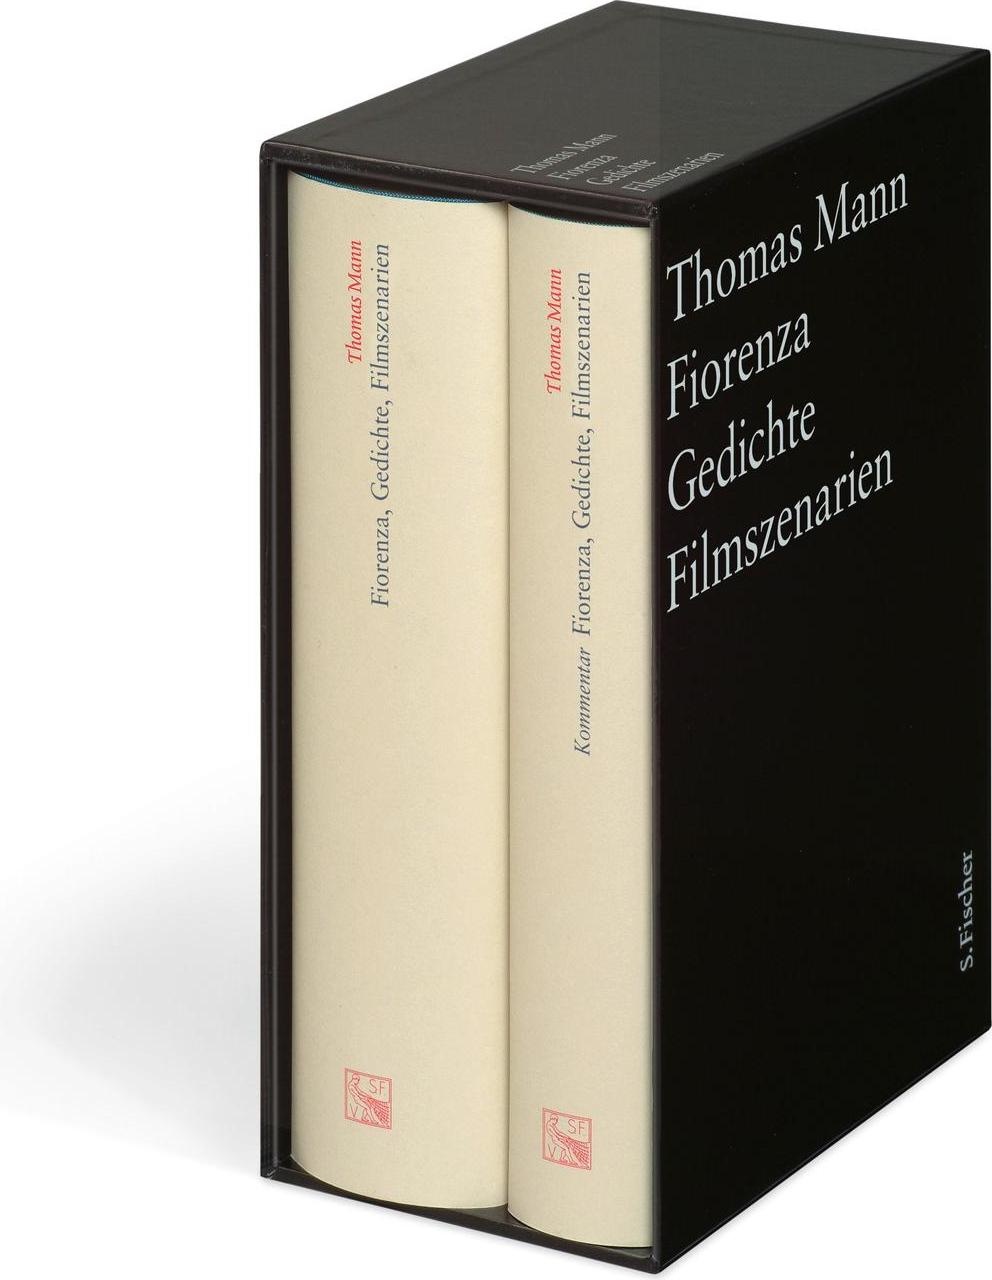 Werke - Briefe - Tagebücher. GKFA (Band 3.1 und 3.2): Fiorenza, Gedichte, Filmentwürfe, Belletristik von Thomas Mann